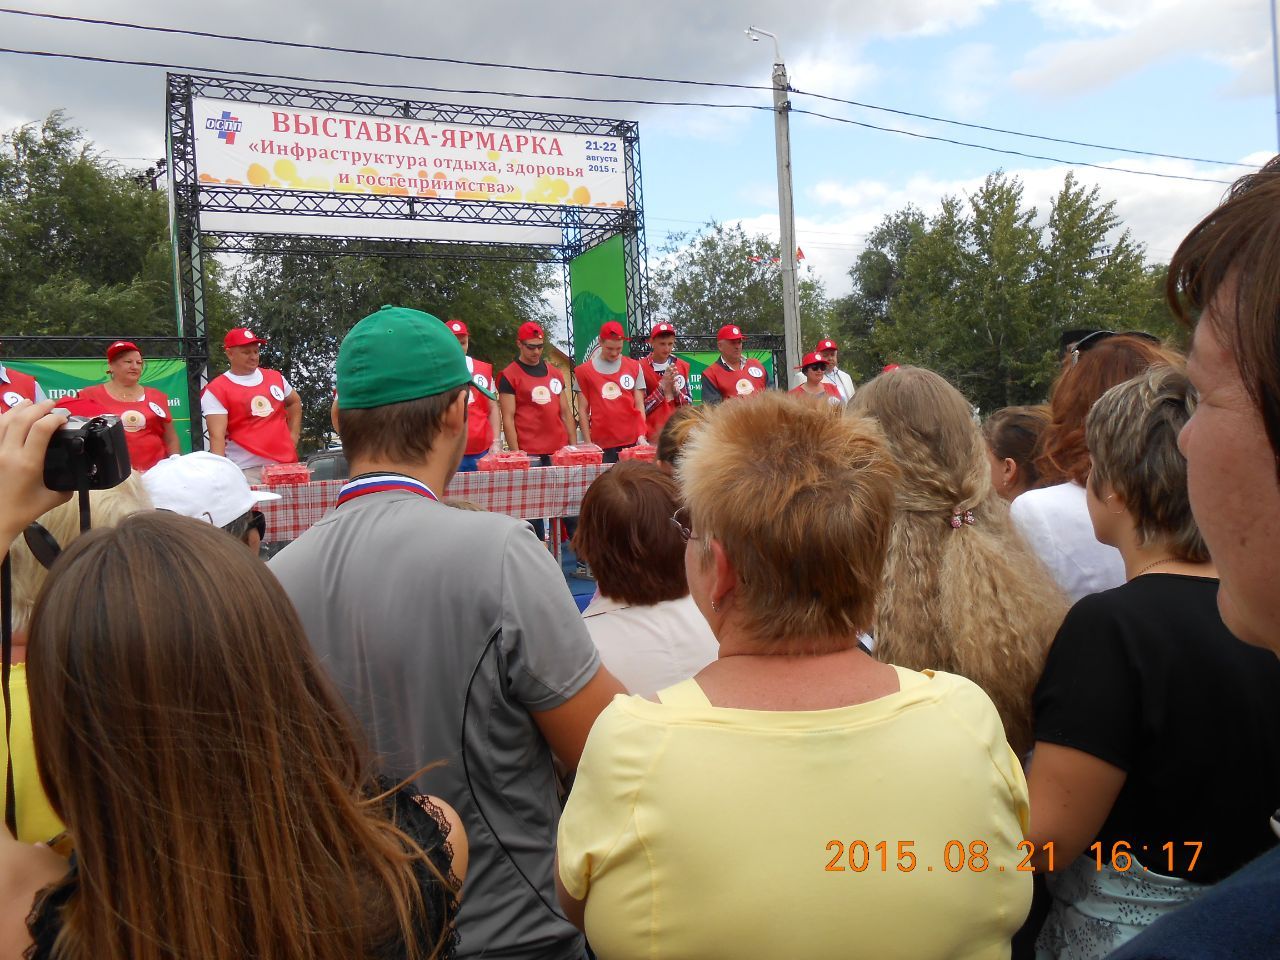 поедание арбузов на скорость - Арбузный фестиваль в Соль- Илецке